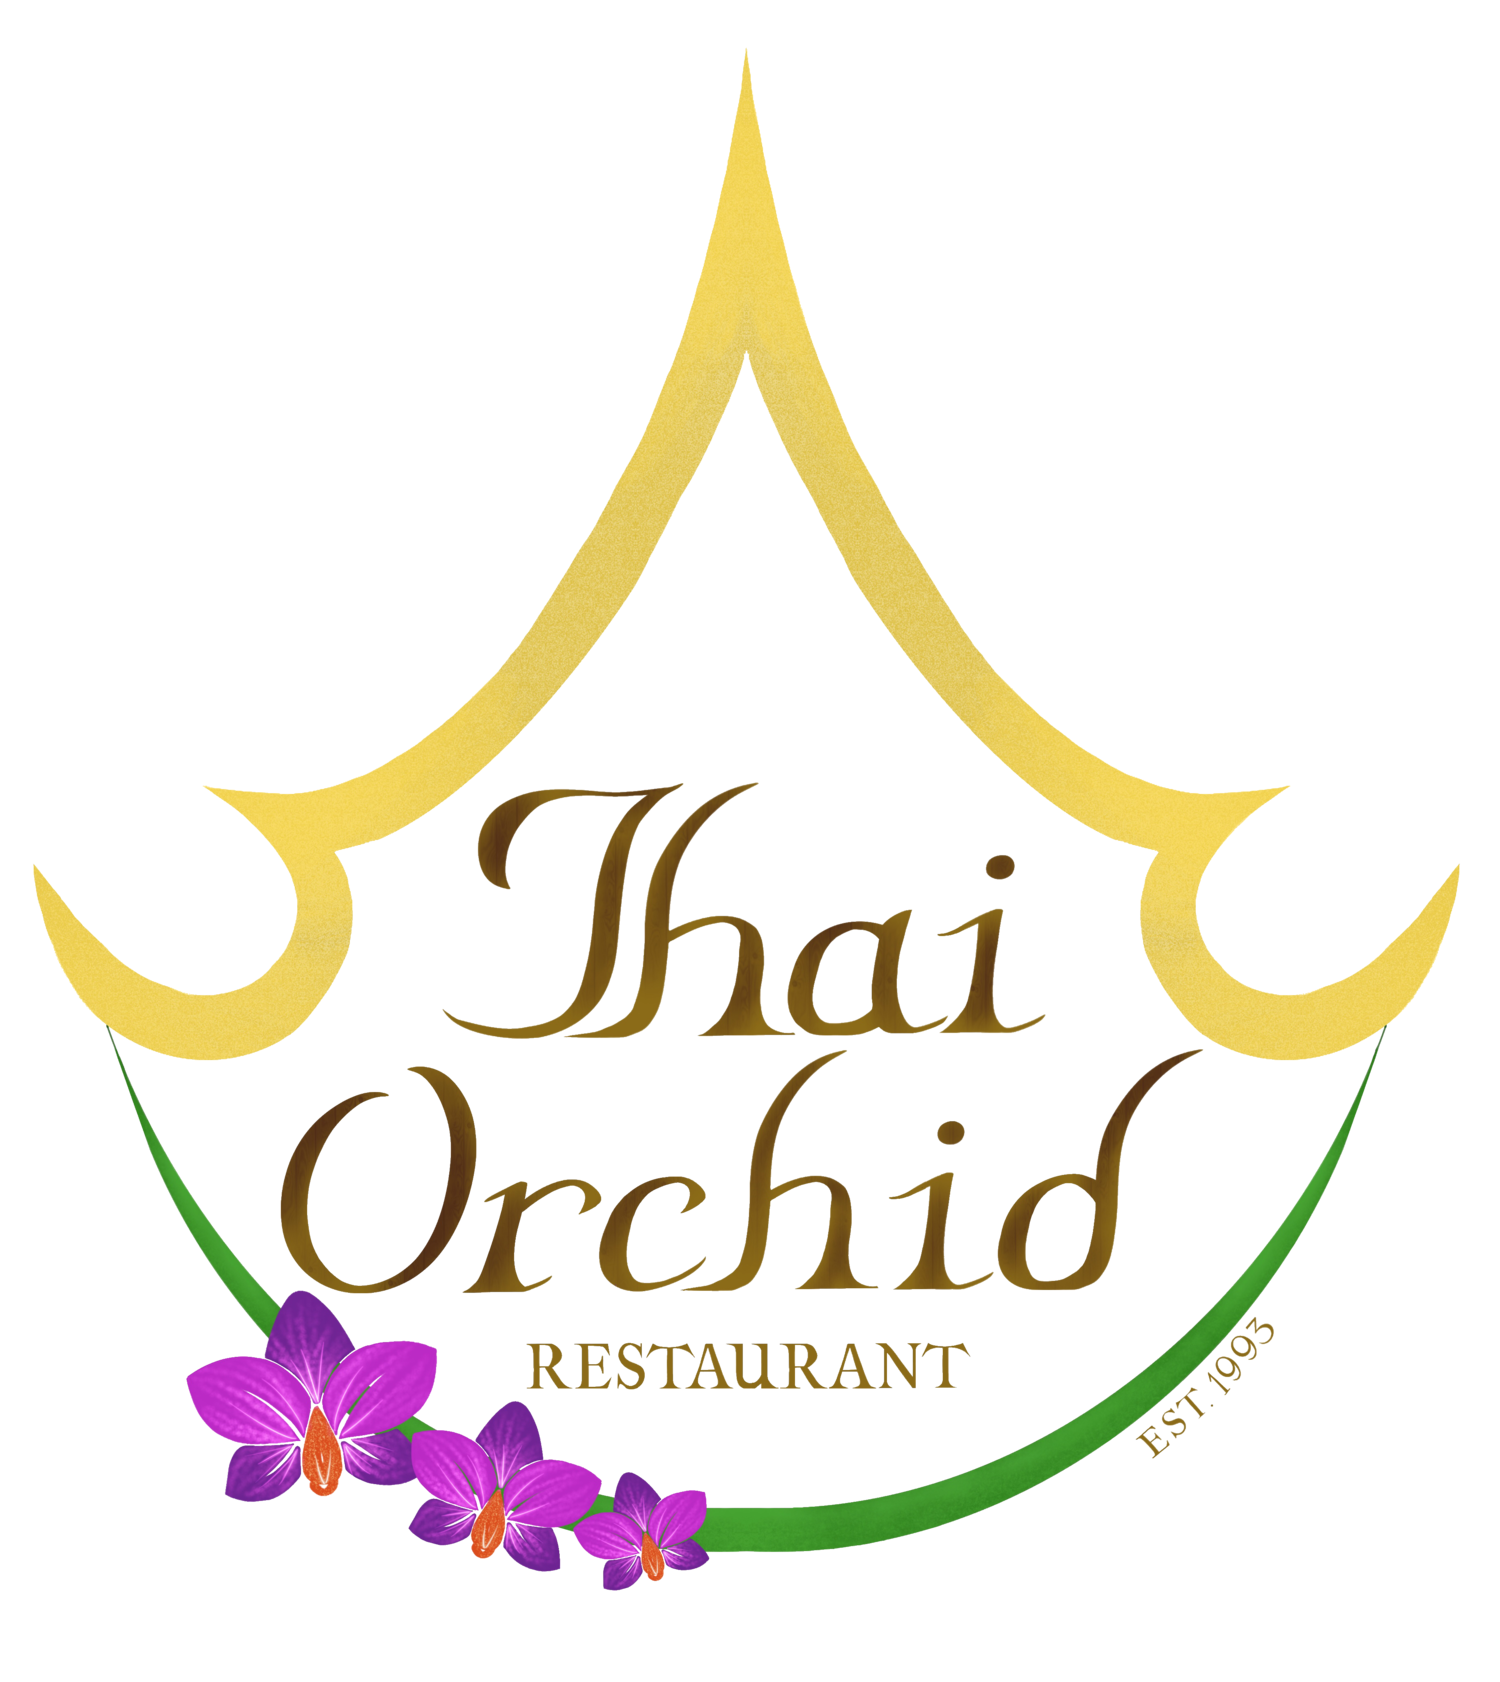 Thai Orchid Restaurant | 1404 N Sandhills Blvd, Aberdeen, NC 28315 (910) 944-9299